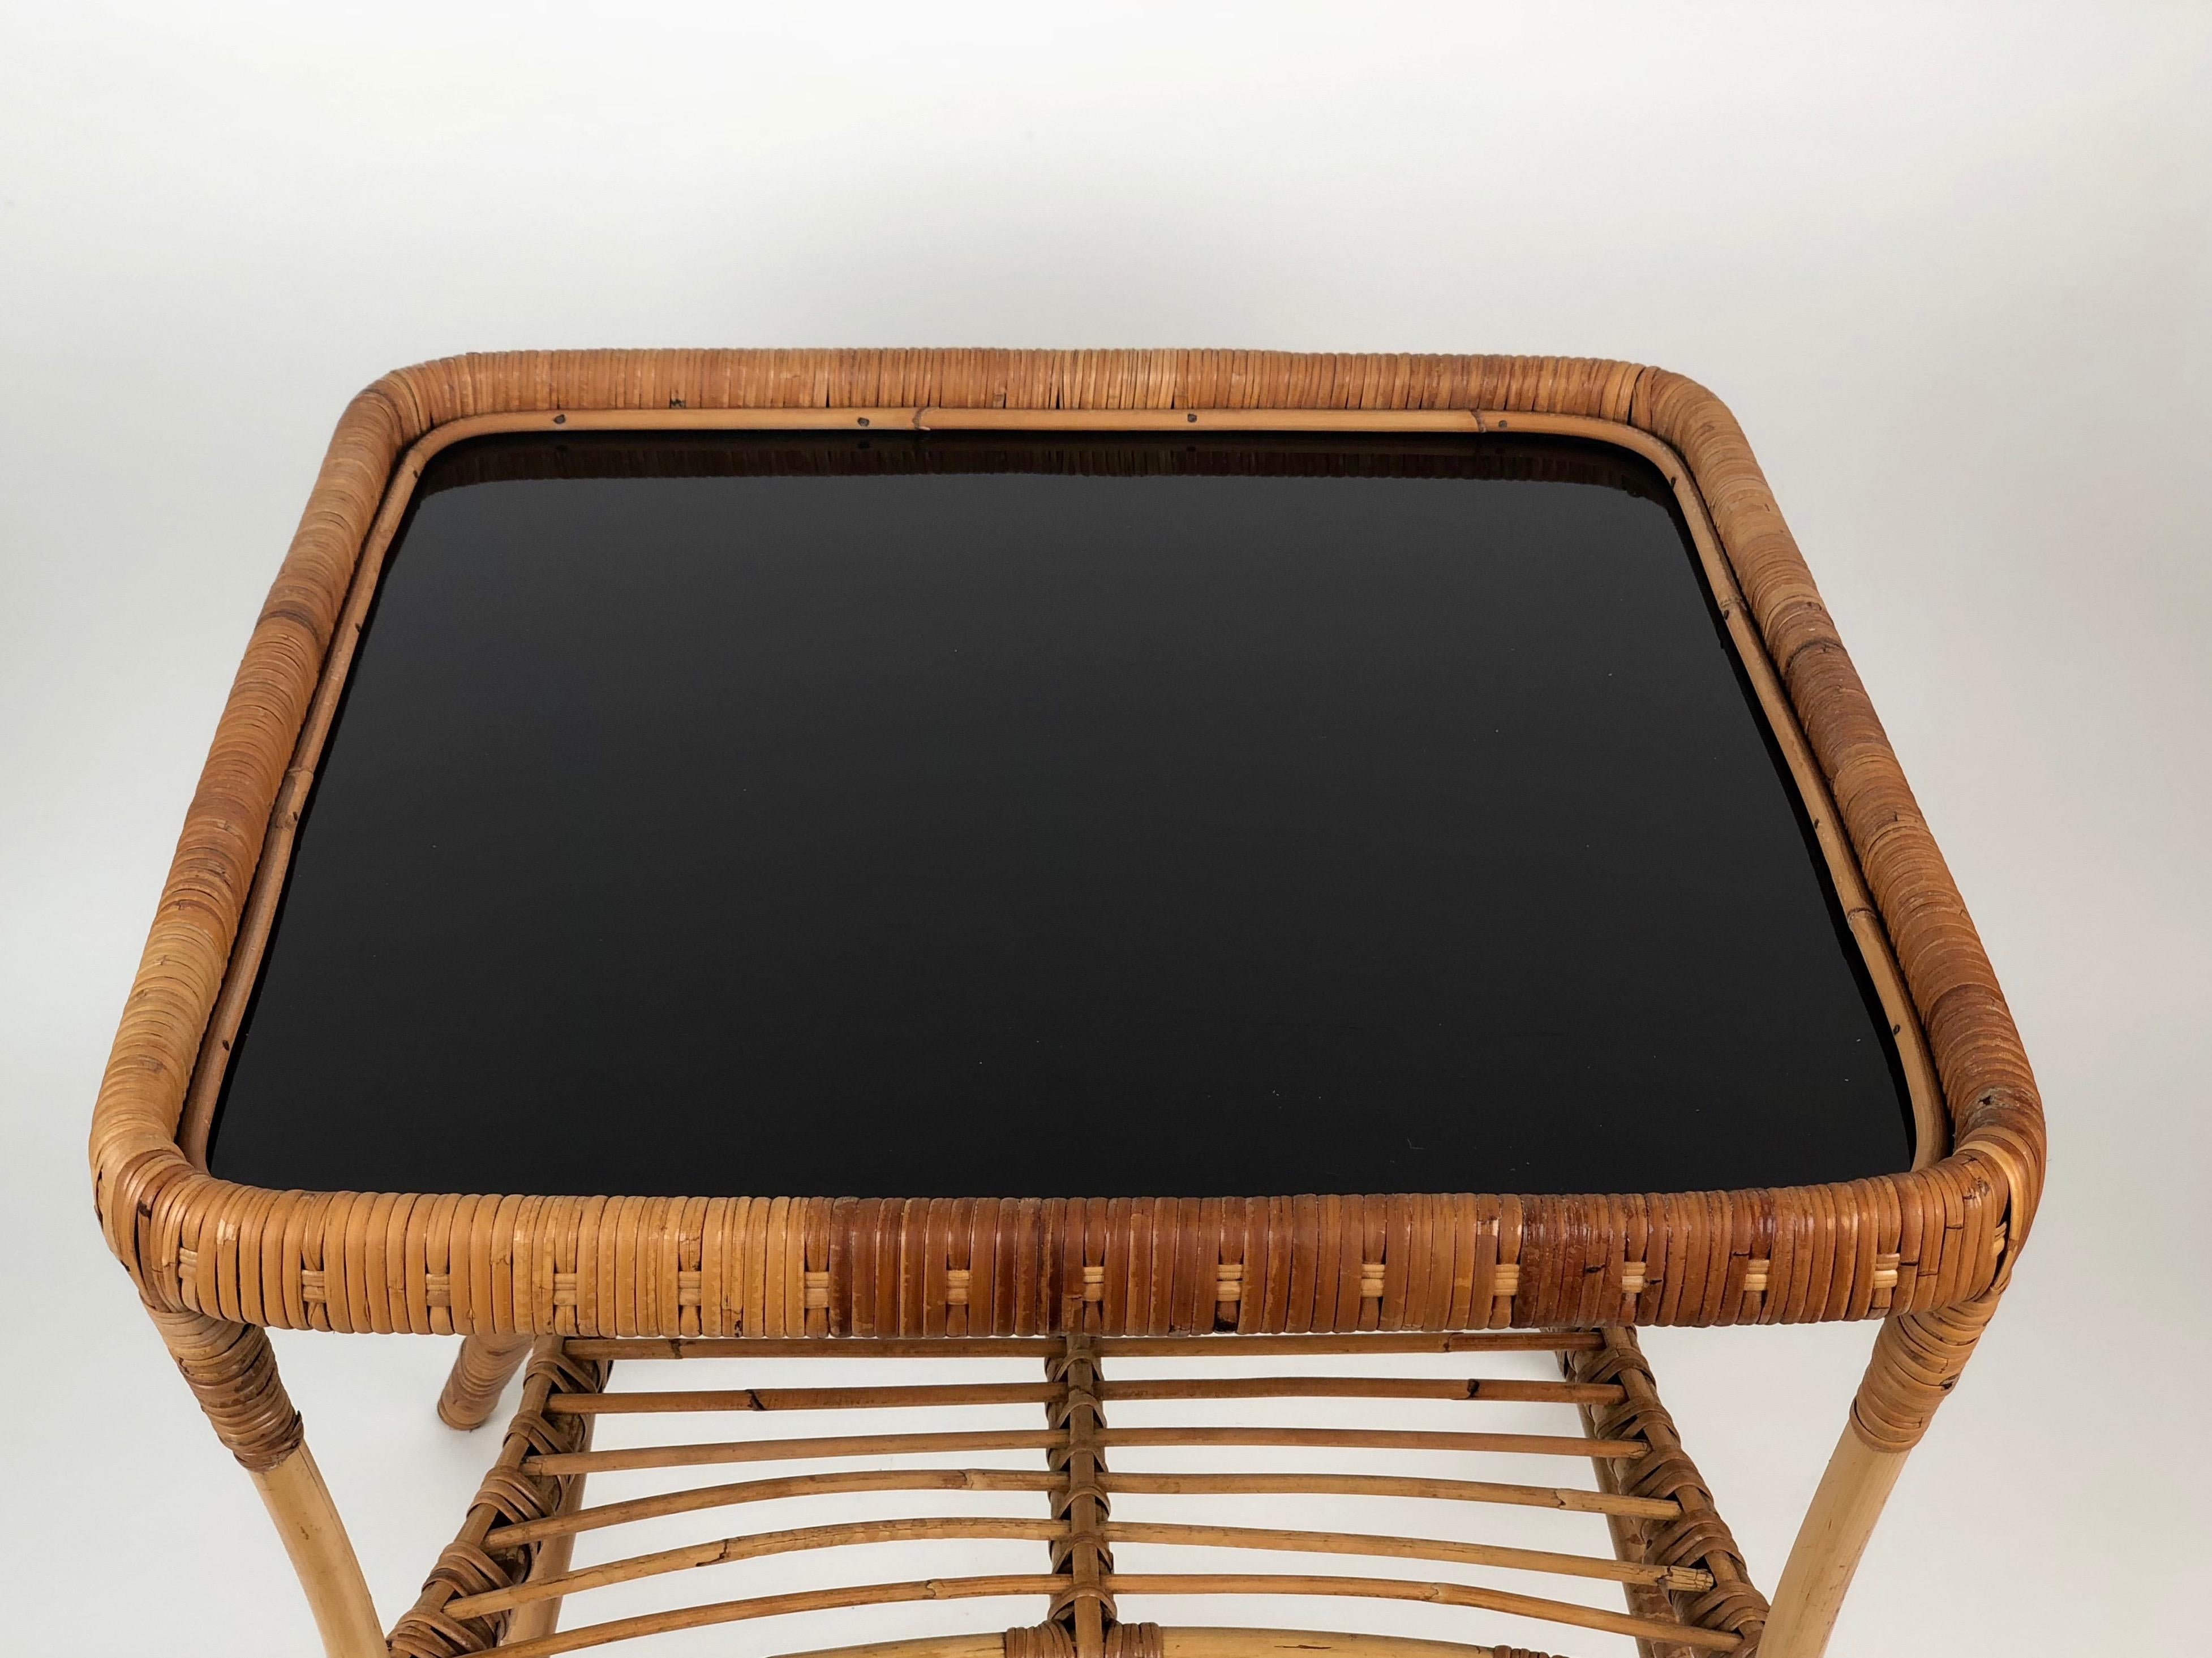 Deux chaises et une charmante table basse en bambou et osier. La table a un plateau en verre opalin noir.
Design italien. Toutes les pièces sont en bon état.